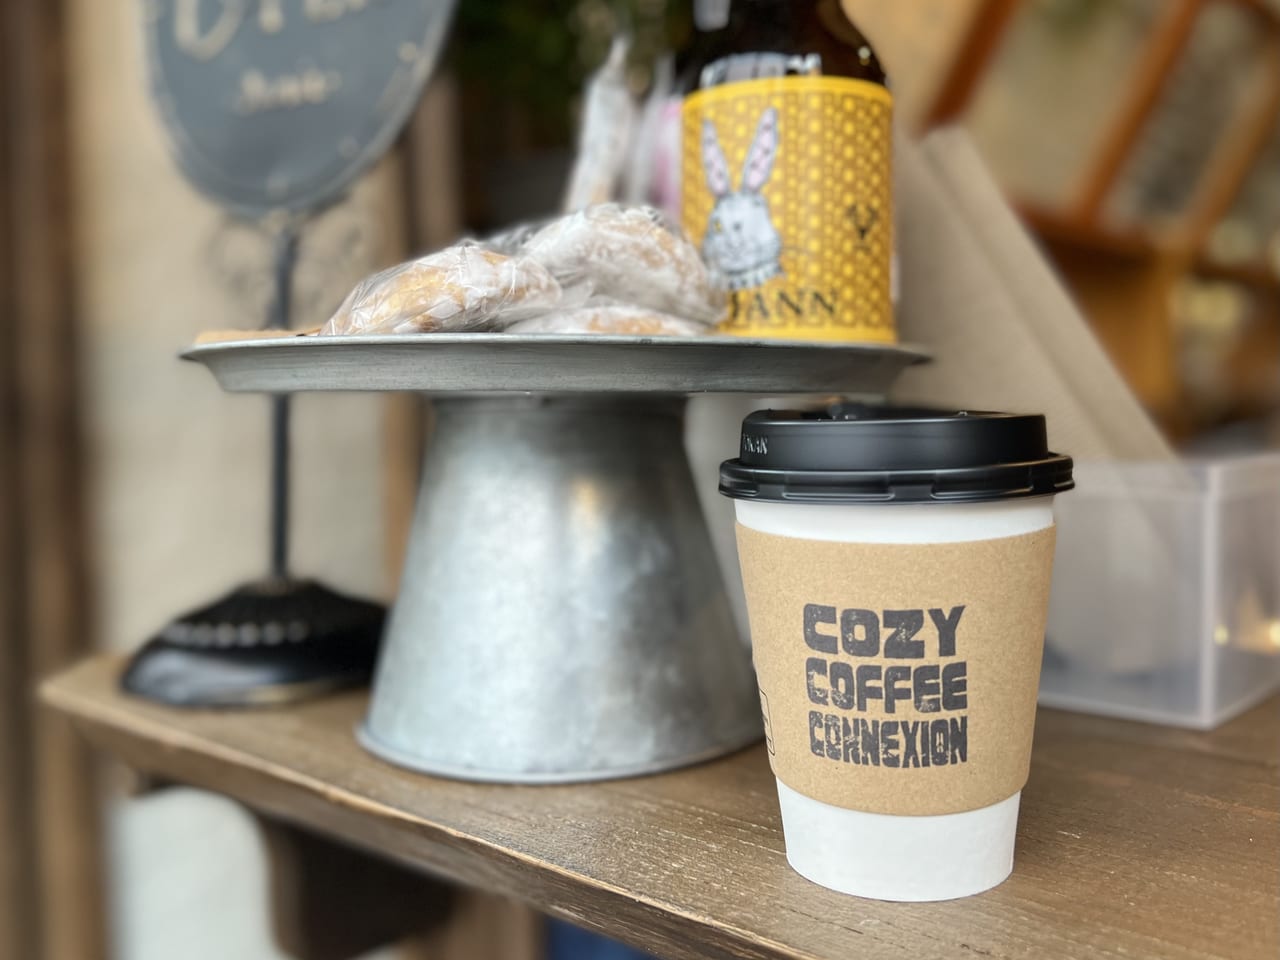 COZY COFFEE CONNEXION